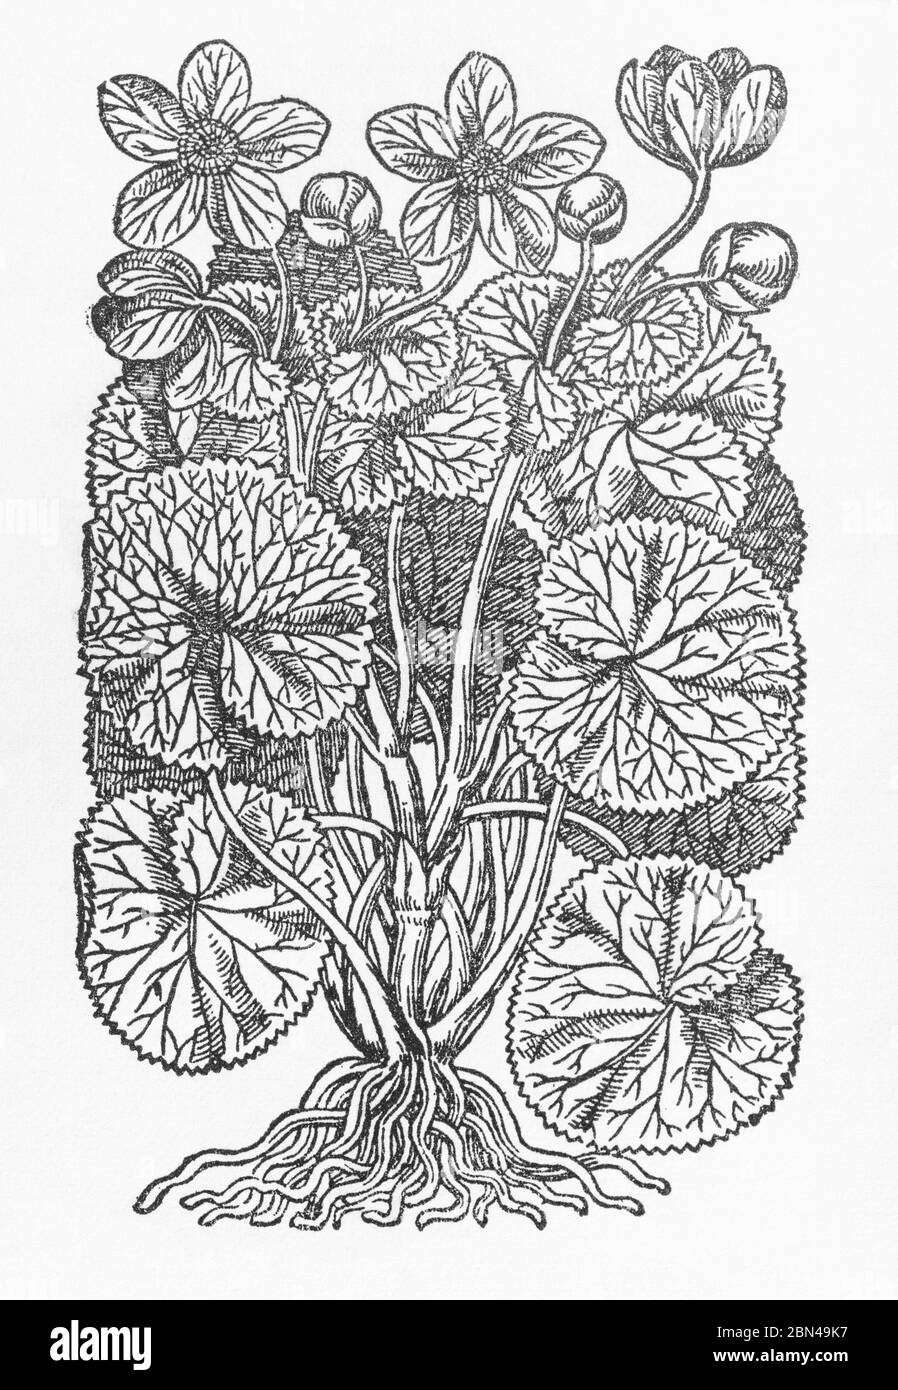 Marsh Marigold / Caltha palustris plante coupée en bois de Gerarde's Herball, Histoire des plantes. Il le désigne comme C. palustris major. P670 Banque D'Images